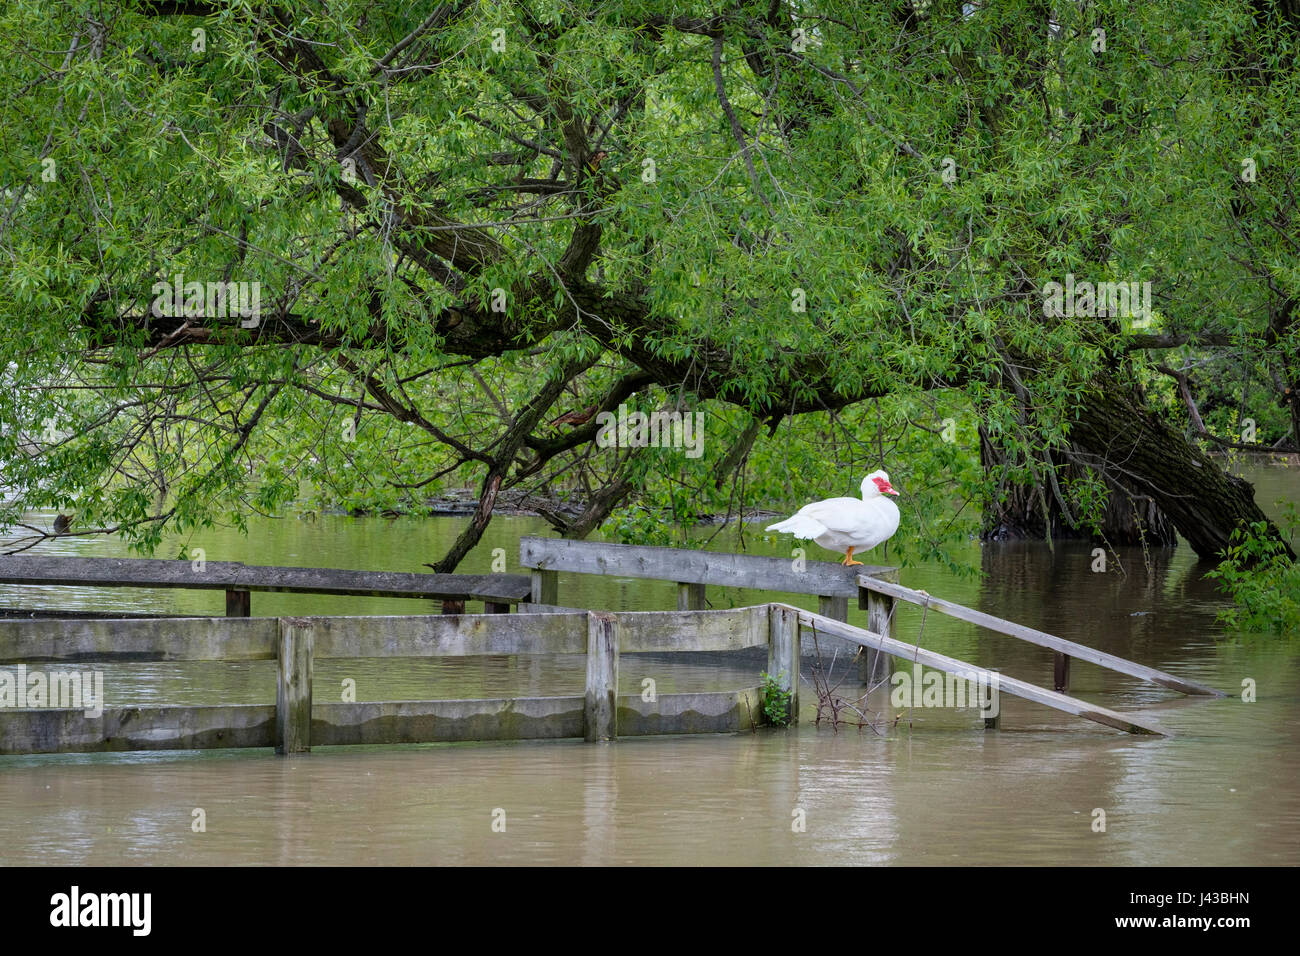 Blanco pato real (Cairina moschata), encaramado en una terraza sobre un río inundado, pato salvaje, macho, drake Muscovy duck. Foto de stock